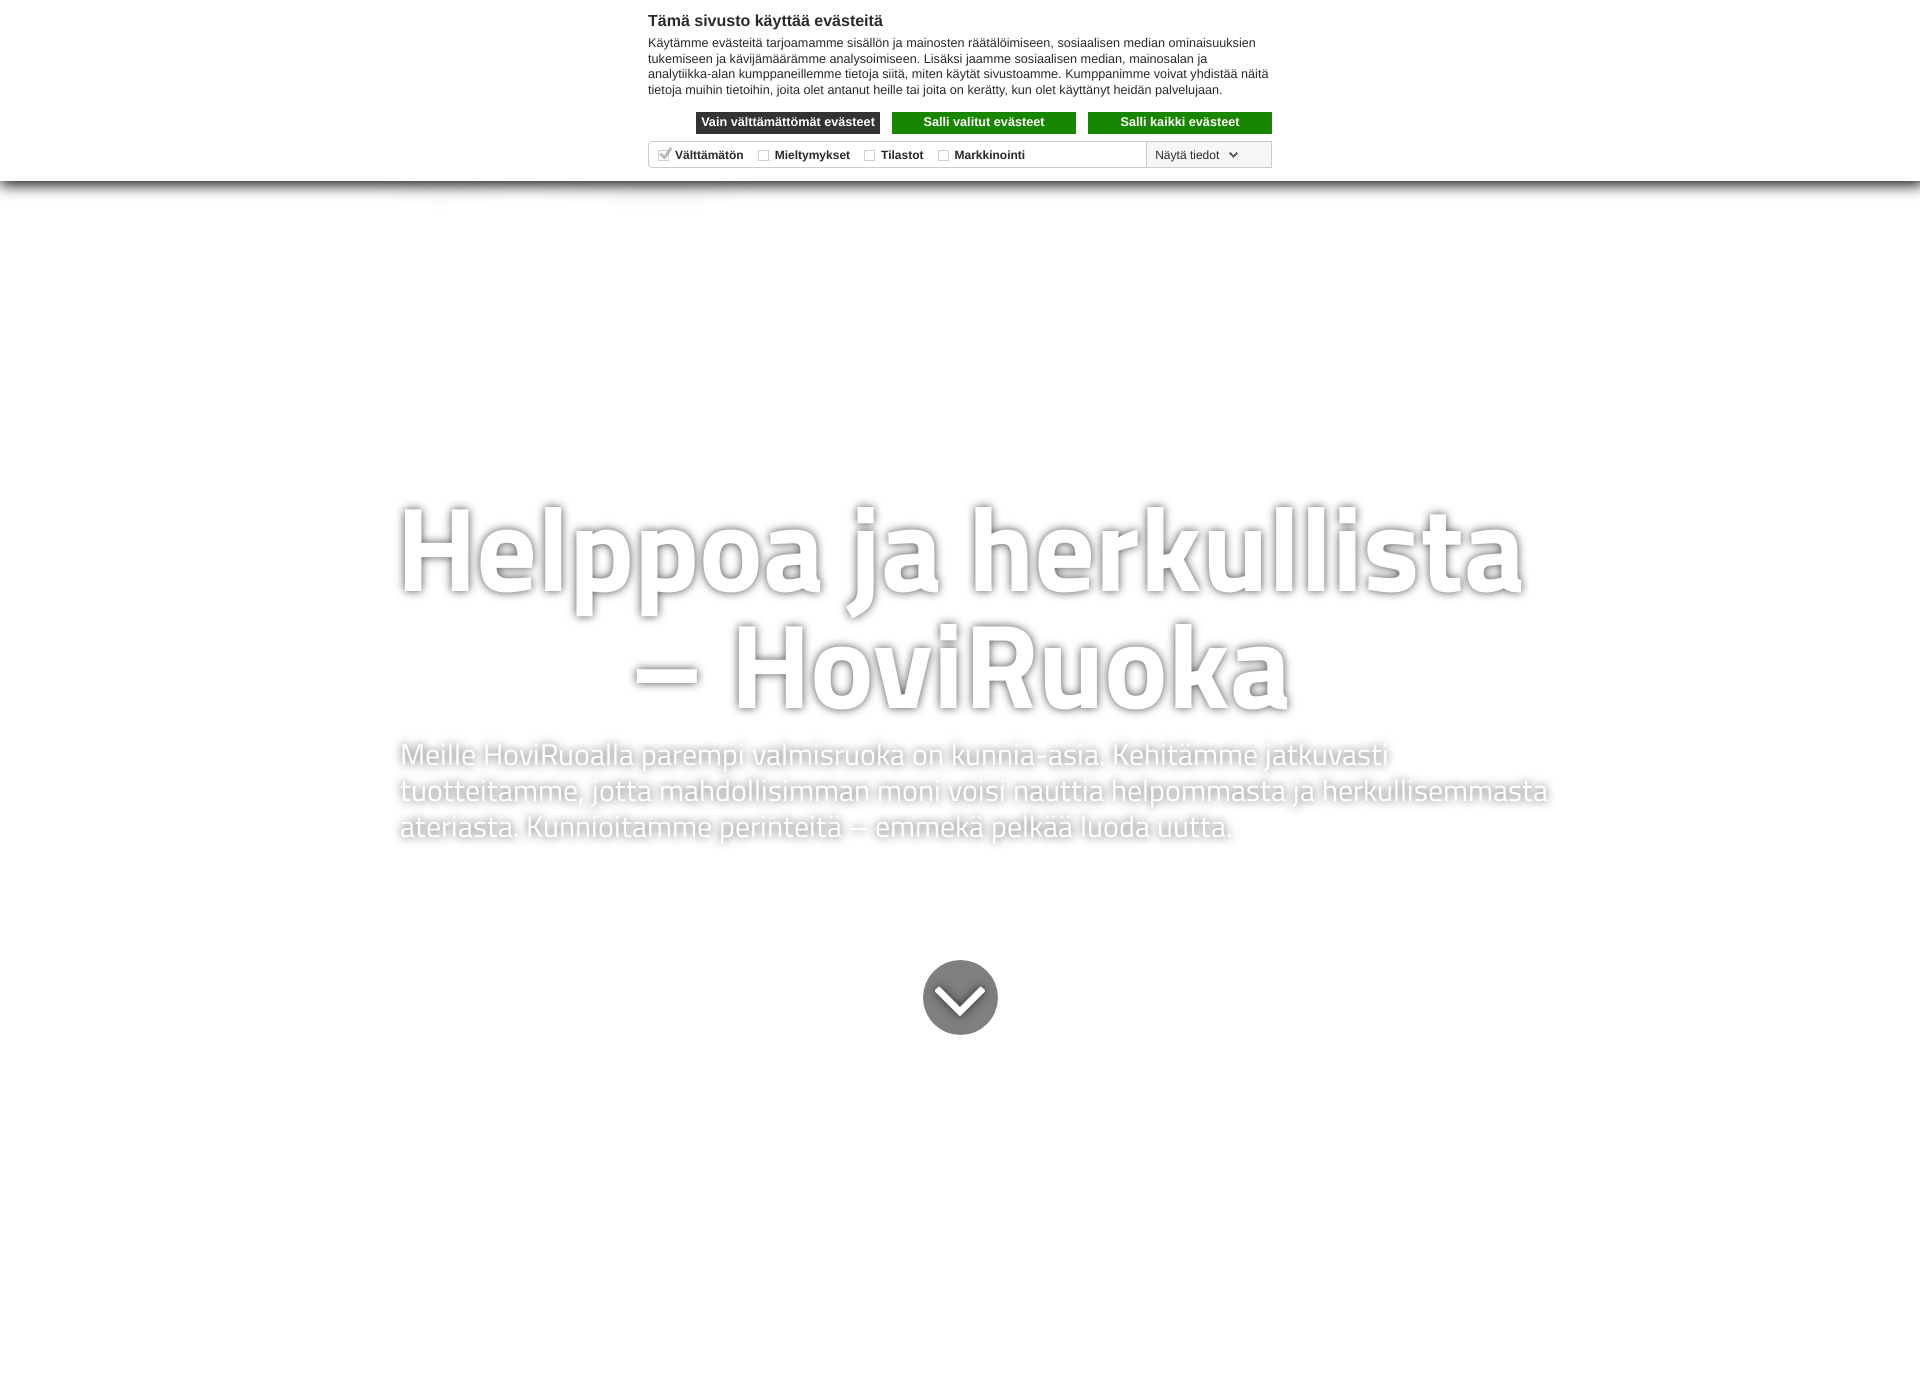 Skärmdump för hoviruoka.fi